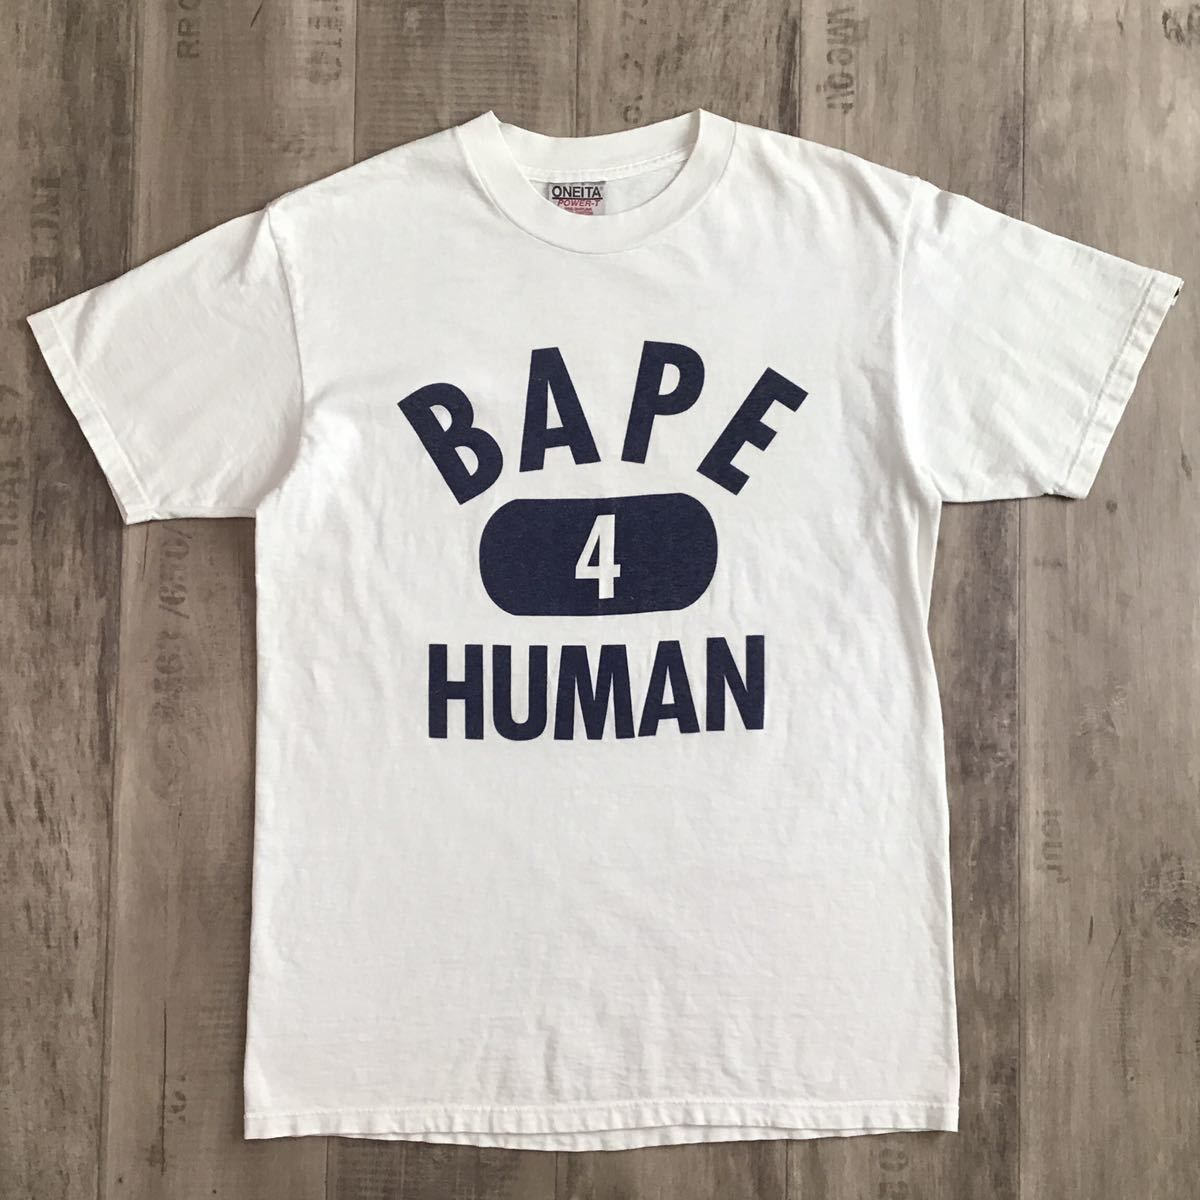 ☆激レア☆ 初期 oneita BAPE 4 HUMAN Tシャツ Mサイズ a bathing ape